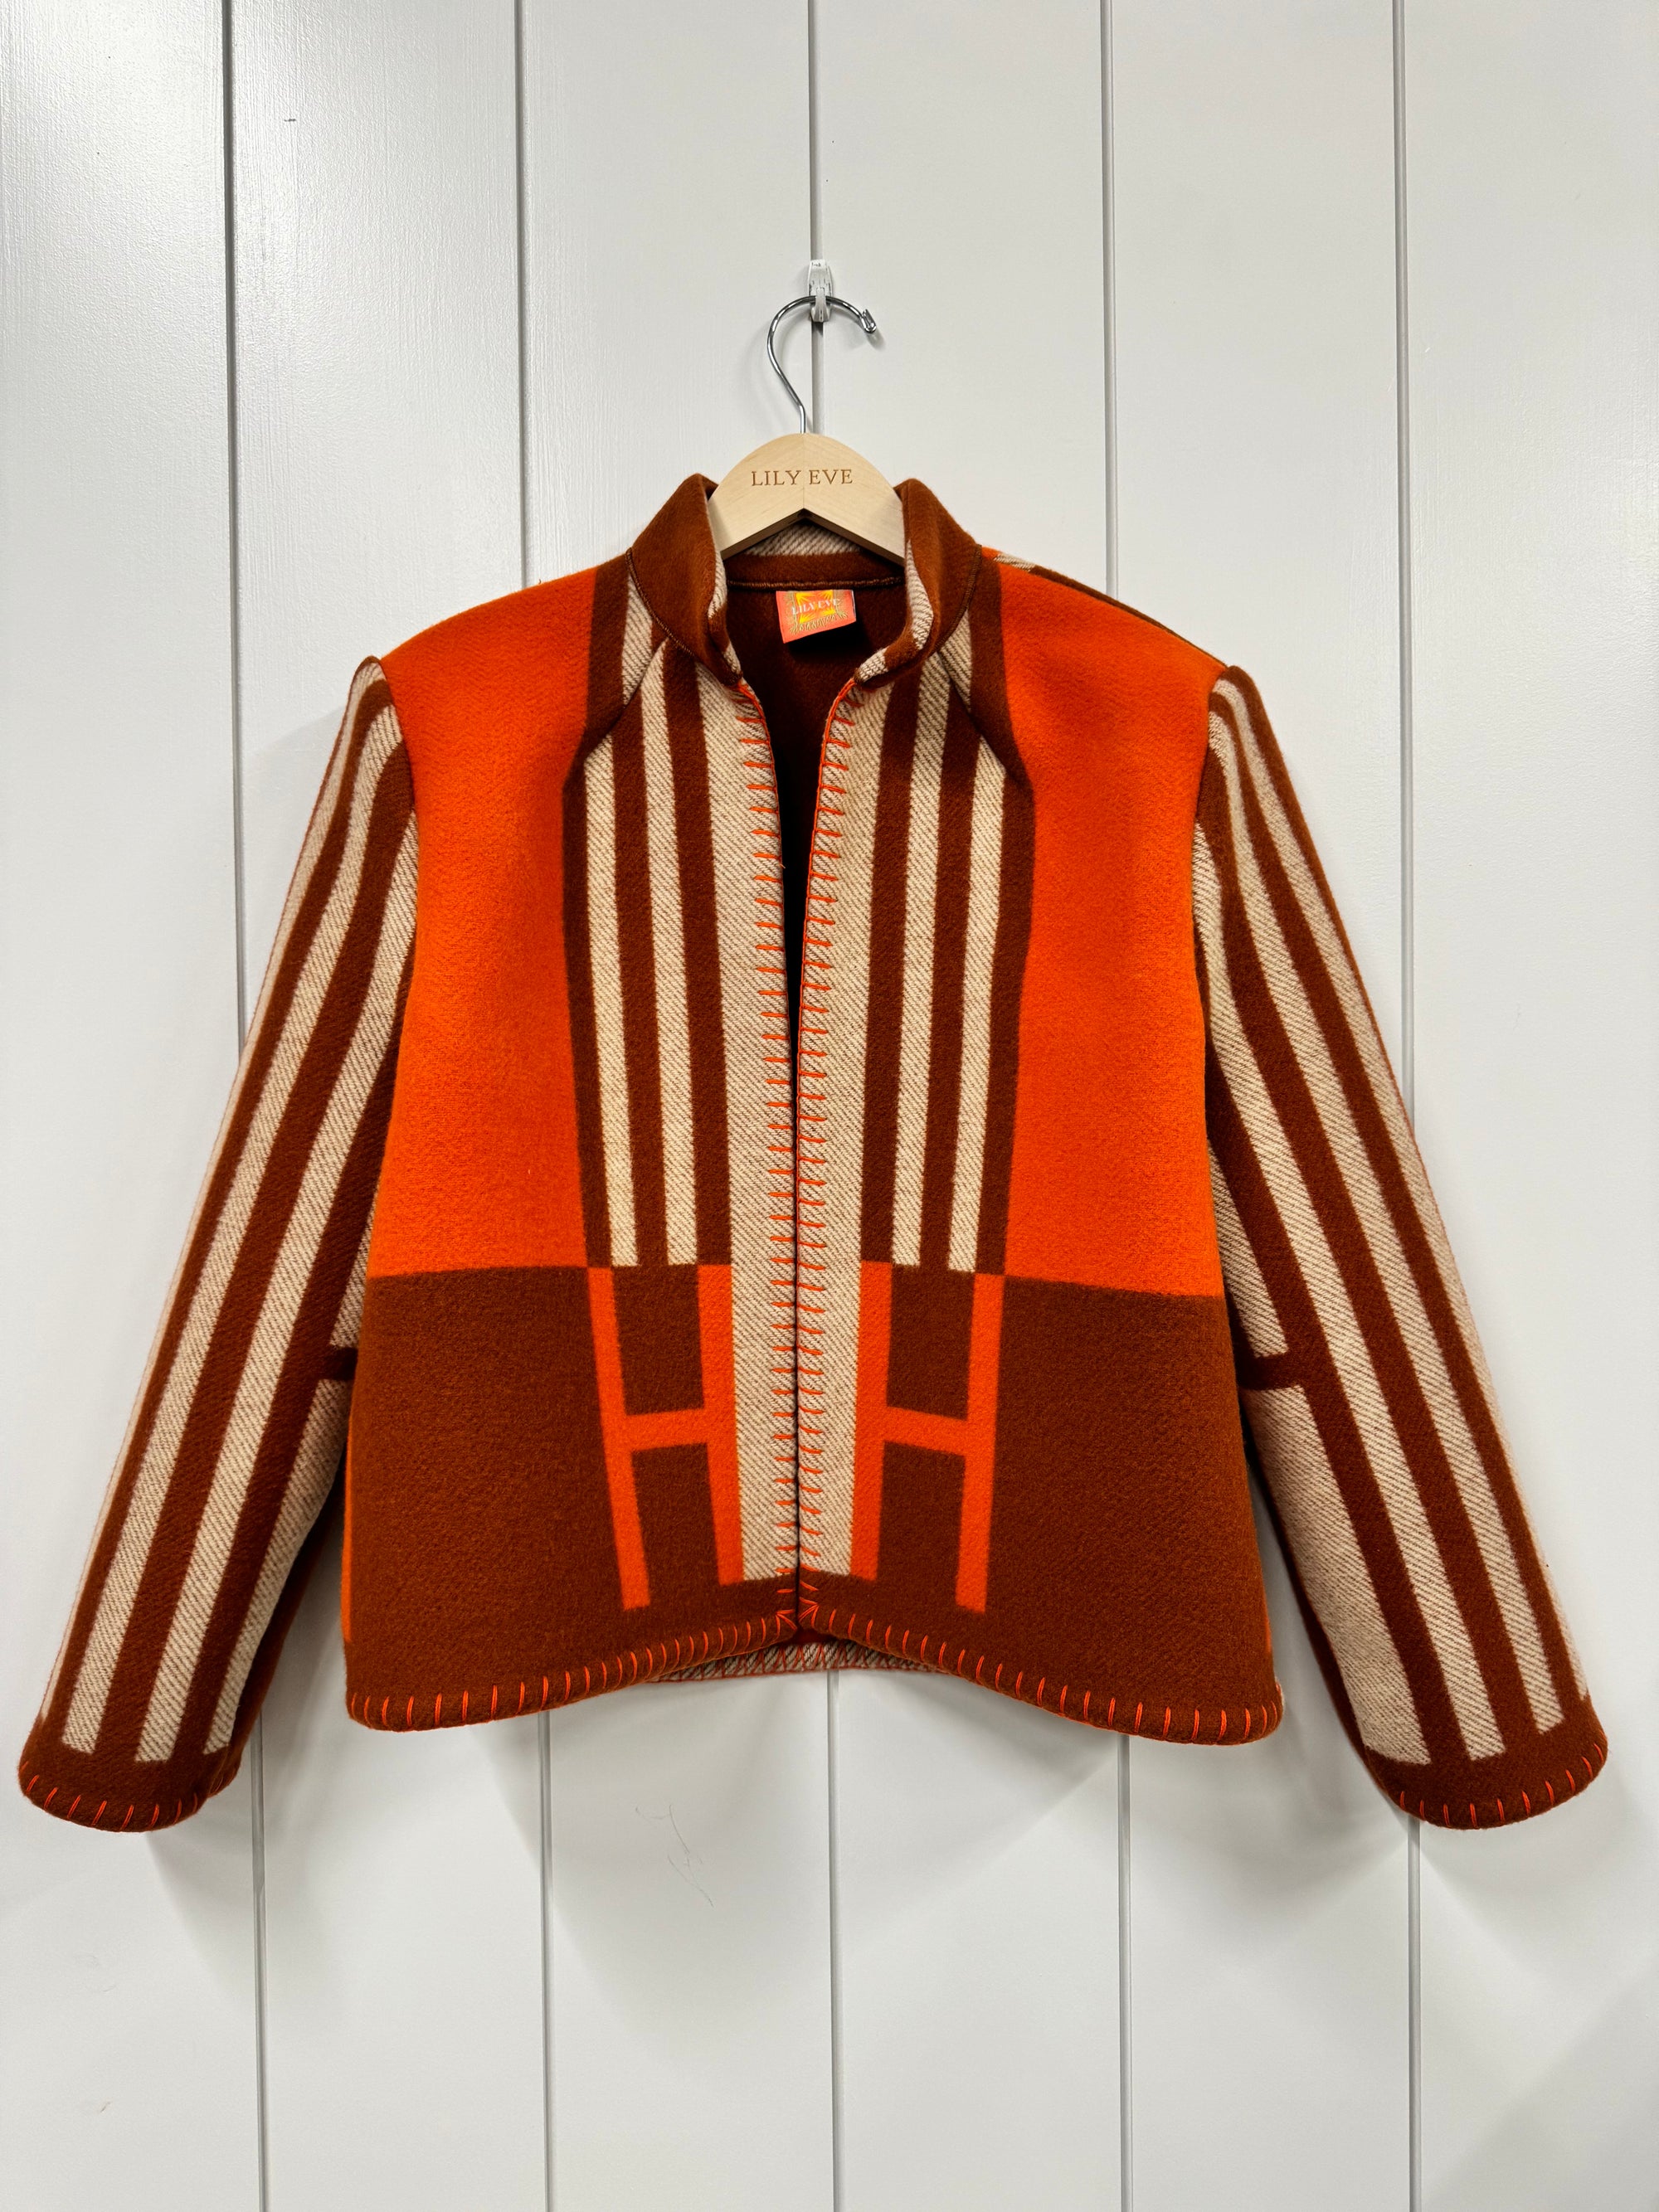 The Orange Stripe Jacket